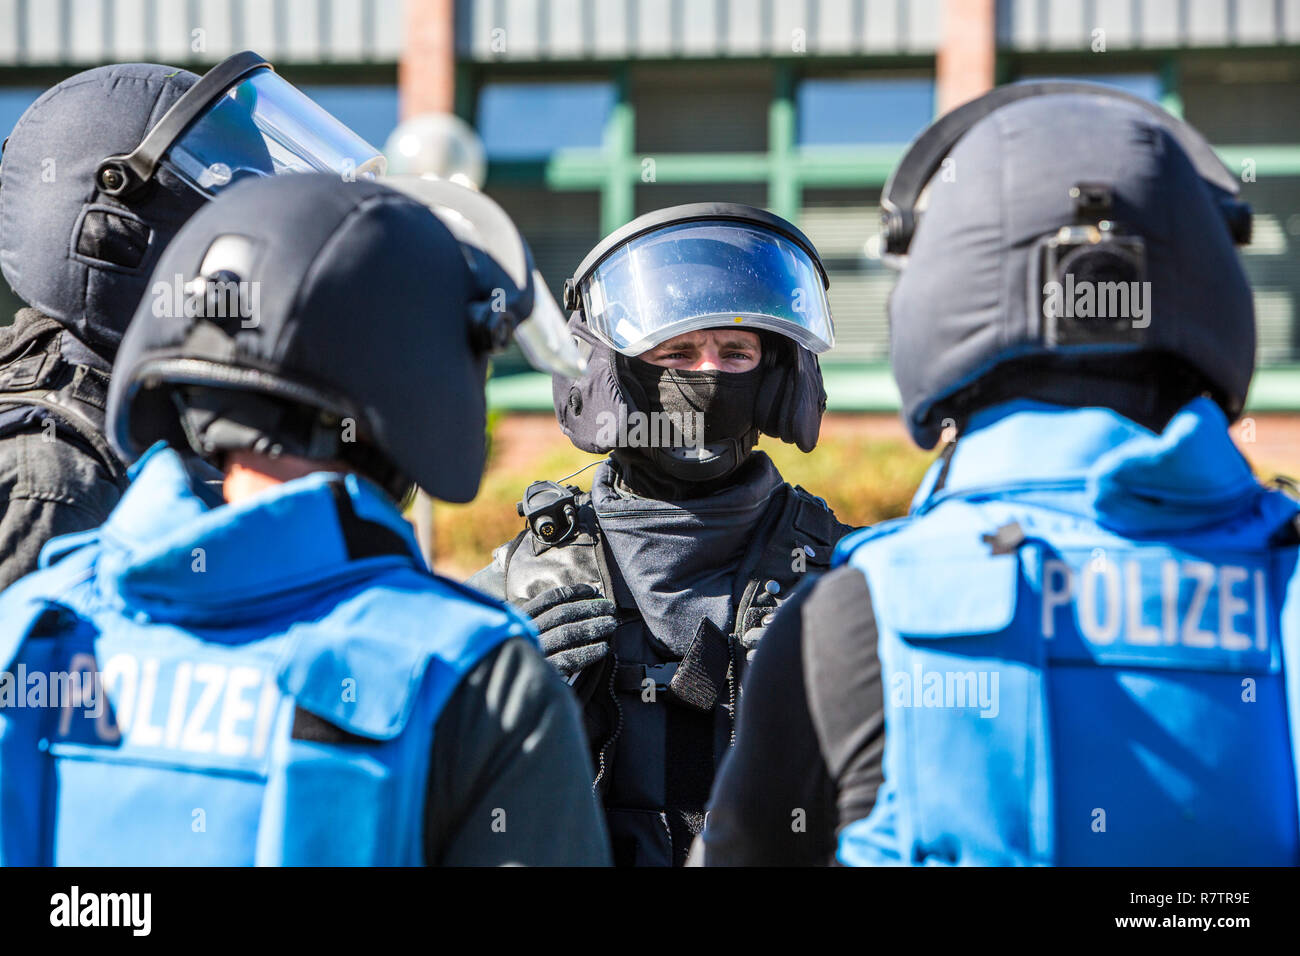 Spezialeinsatzkommandos, SEK, die spezielle Response Unit der Deutschen Polizeien, trägt blaue Warnwesten während eines Stockfoto